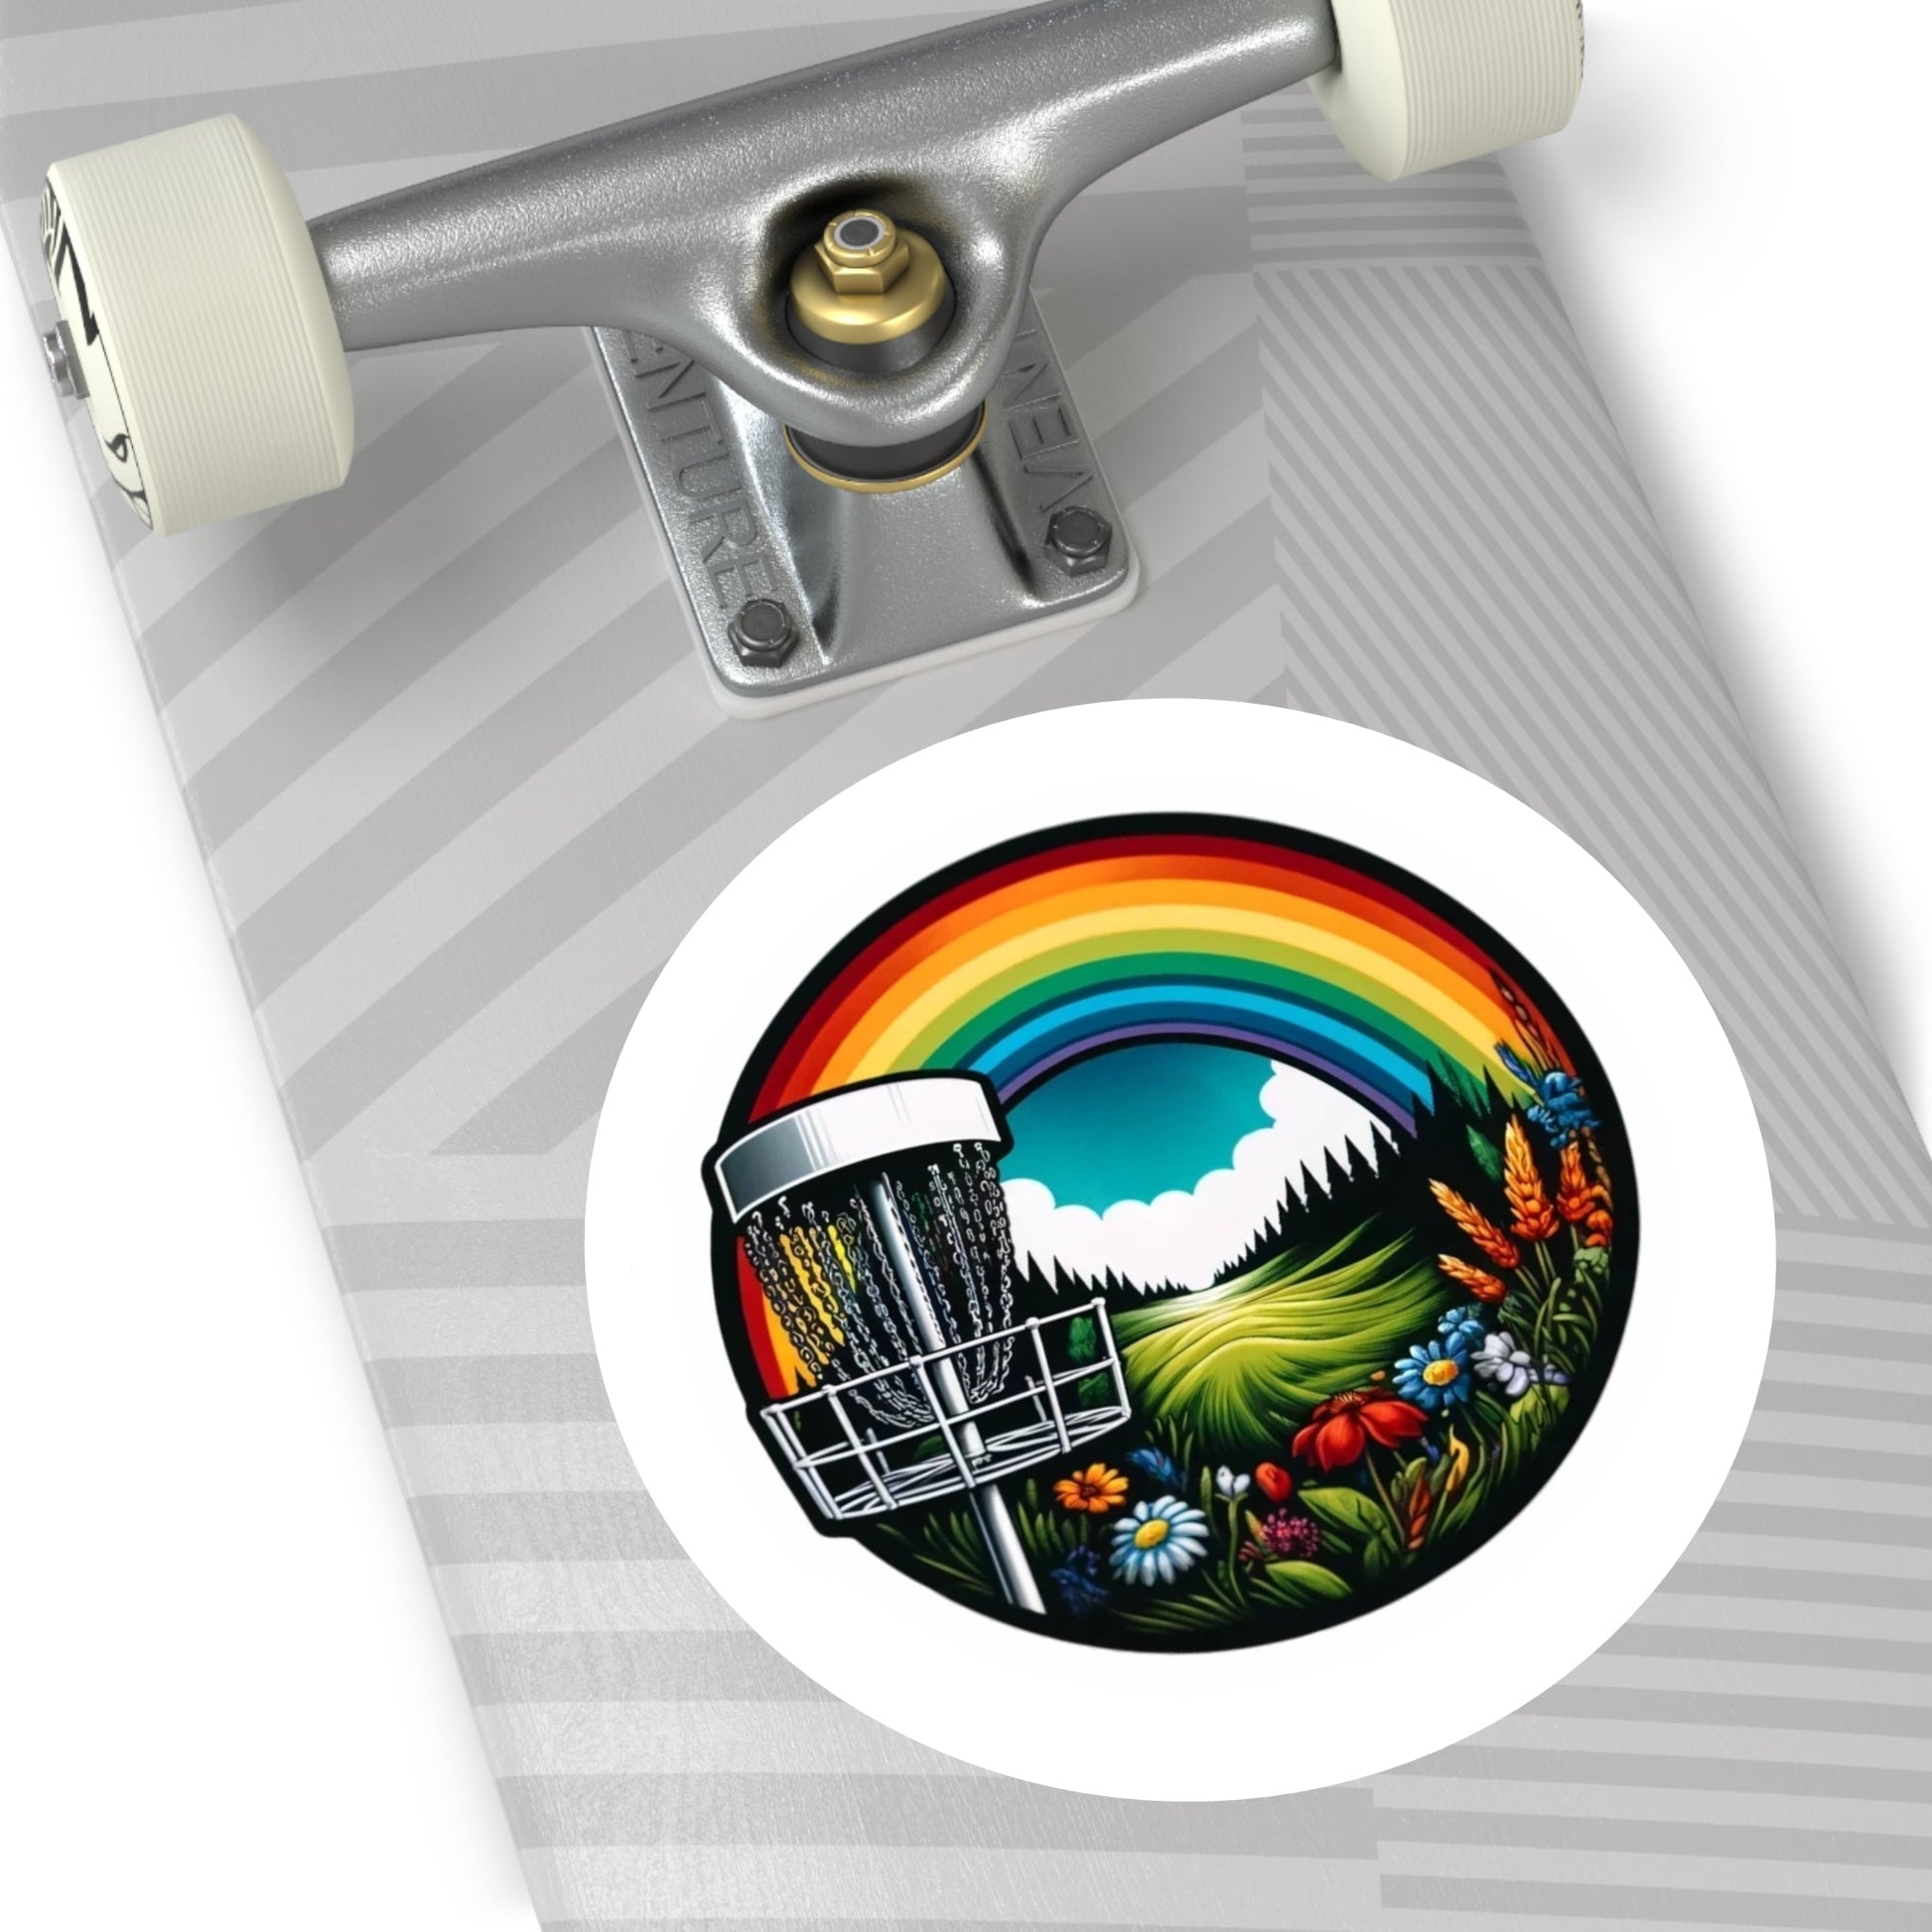 Disc Golf Rainbow v2 Sticker - Round Vinyl Stickers - Quirky Goodies